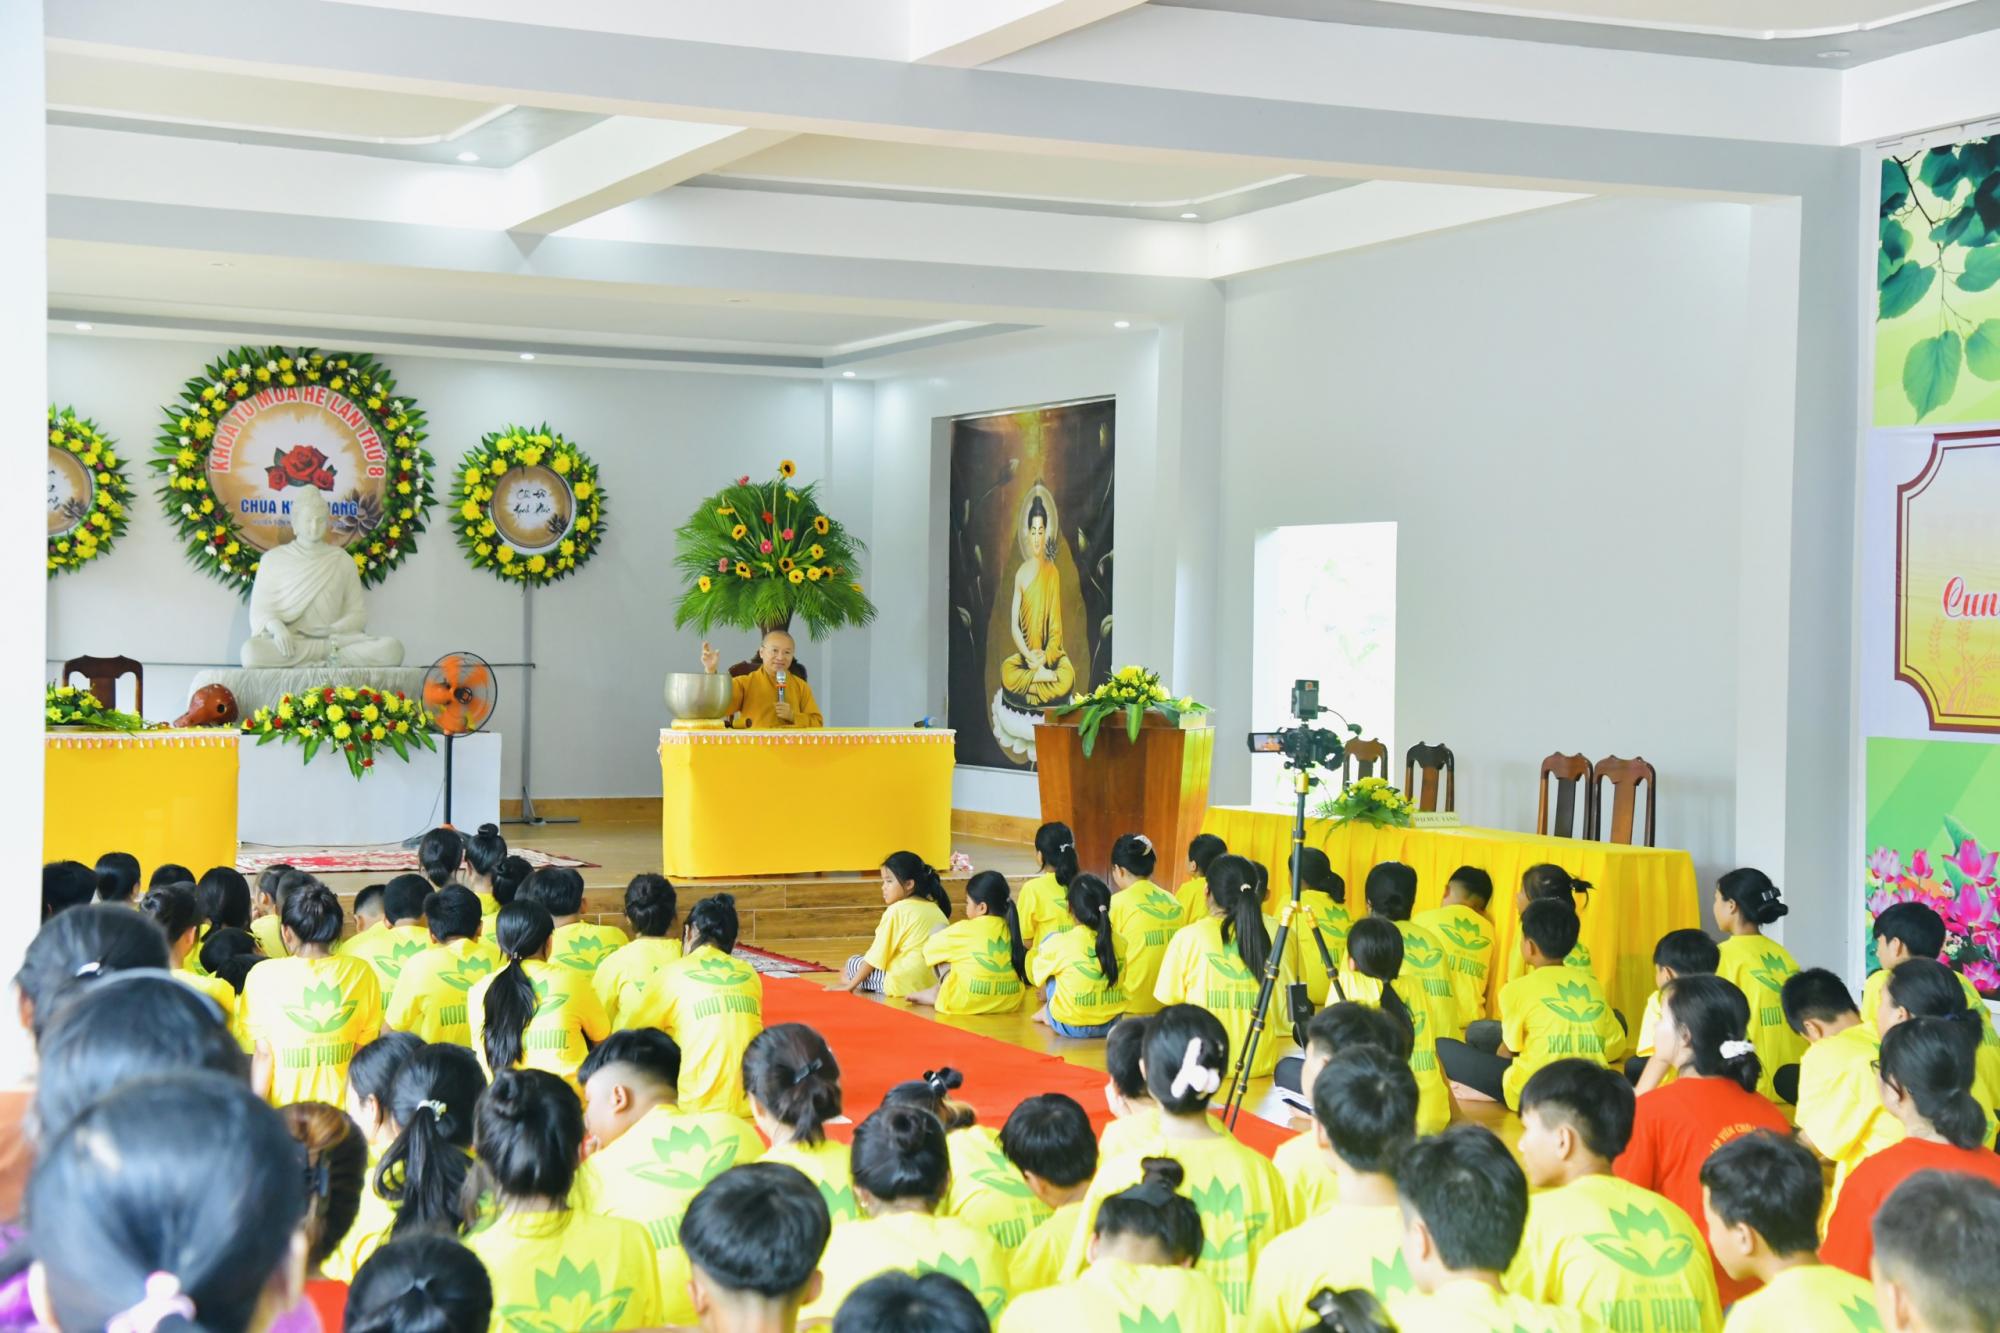 Pháp thoại "Tương lai trong tầm tay" - Thầy Nhật Từ giảng tại chùa Kim Quang